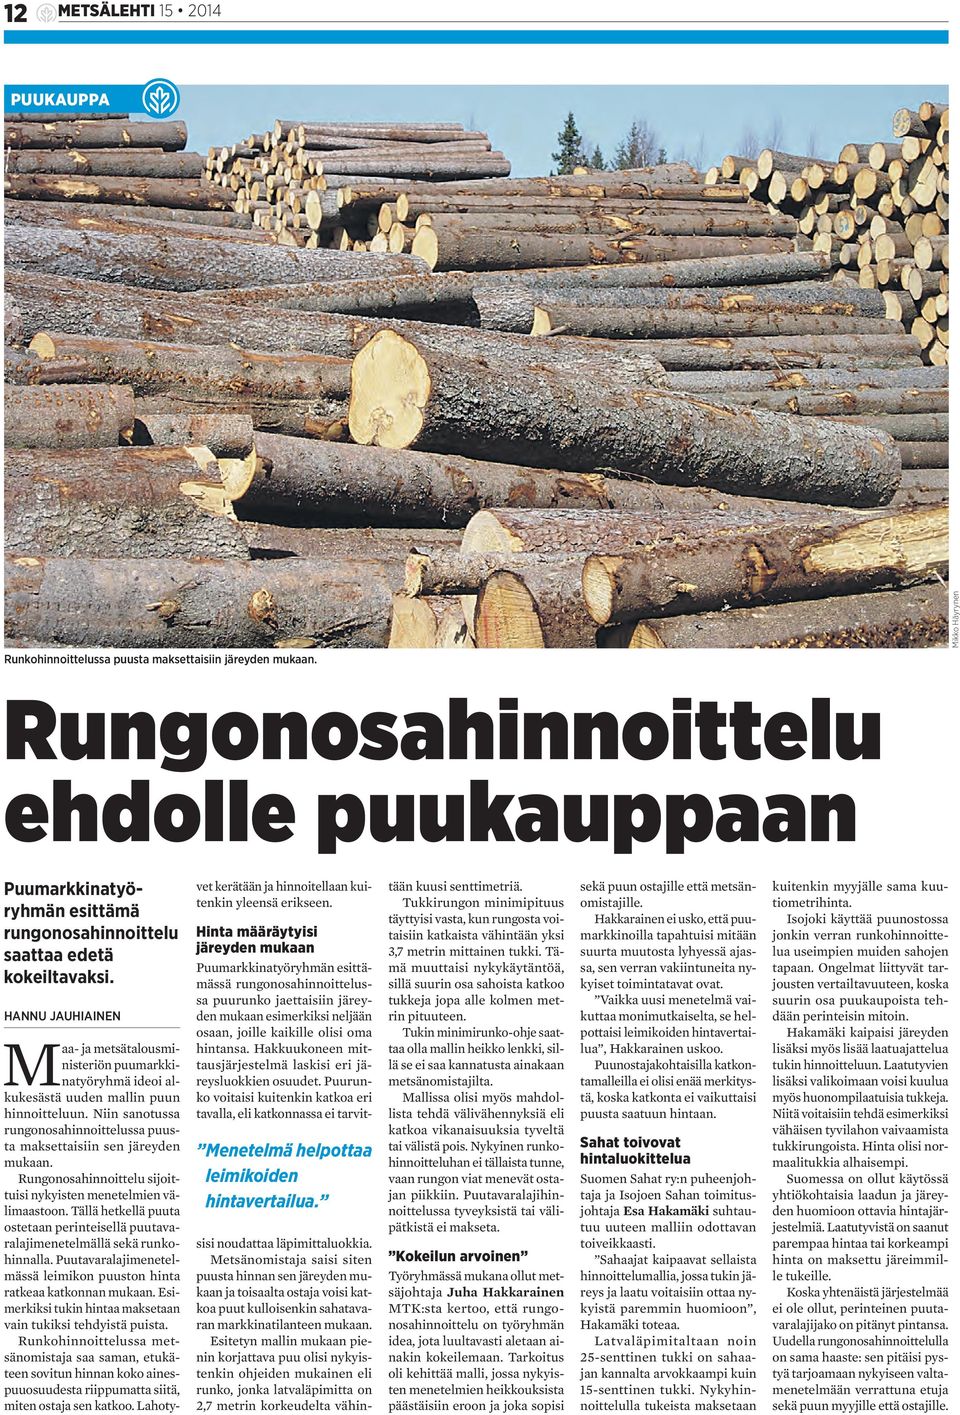 HANNU JAUHIAINEN Maa- ja metsätalousministeriön puumarkkinatyöryhmä ideoi alkukesästä uuden mallin puun hinnoitteluun. Niin sanotussa rungonosahinnoittelussa puusta maksettaisiin sen järeyden mukaan.